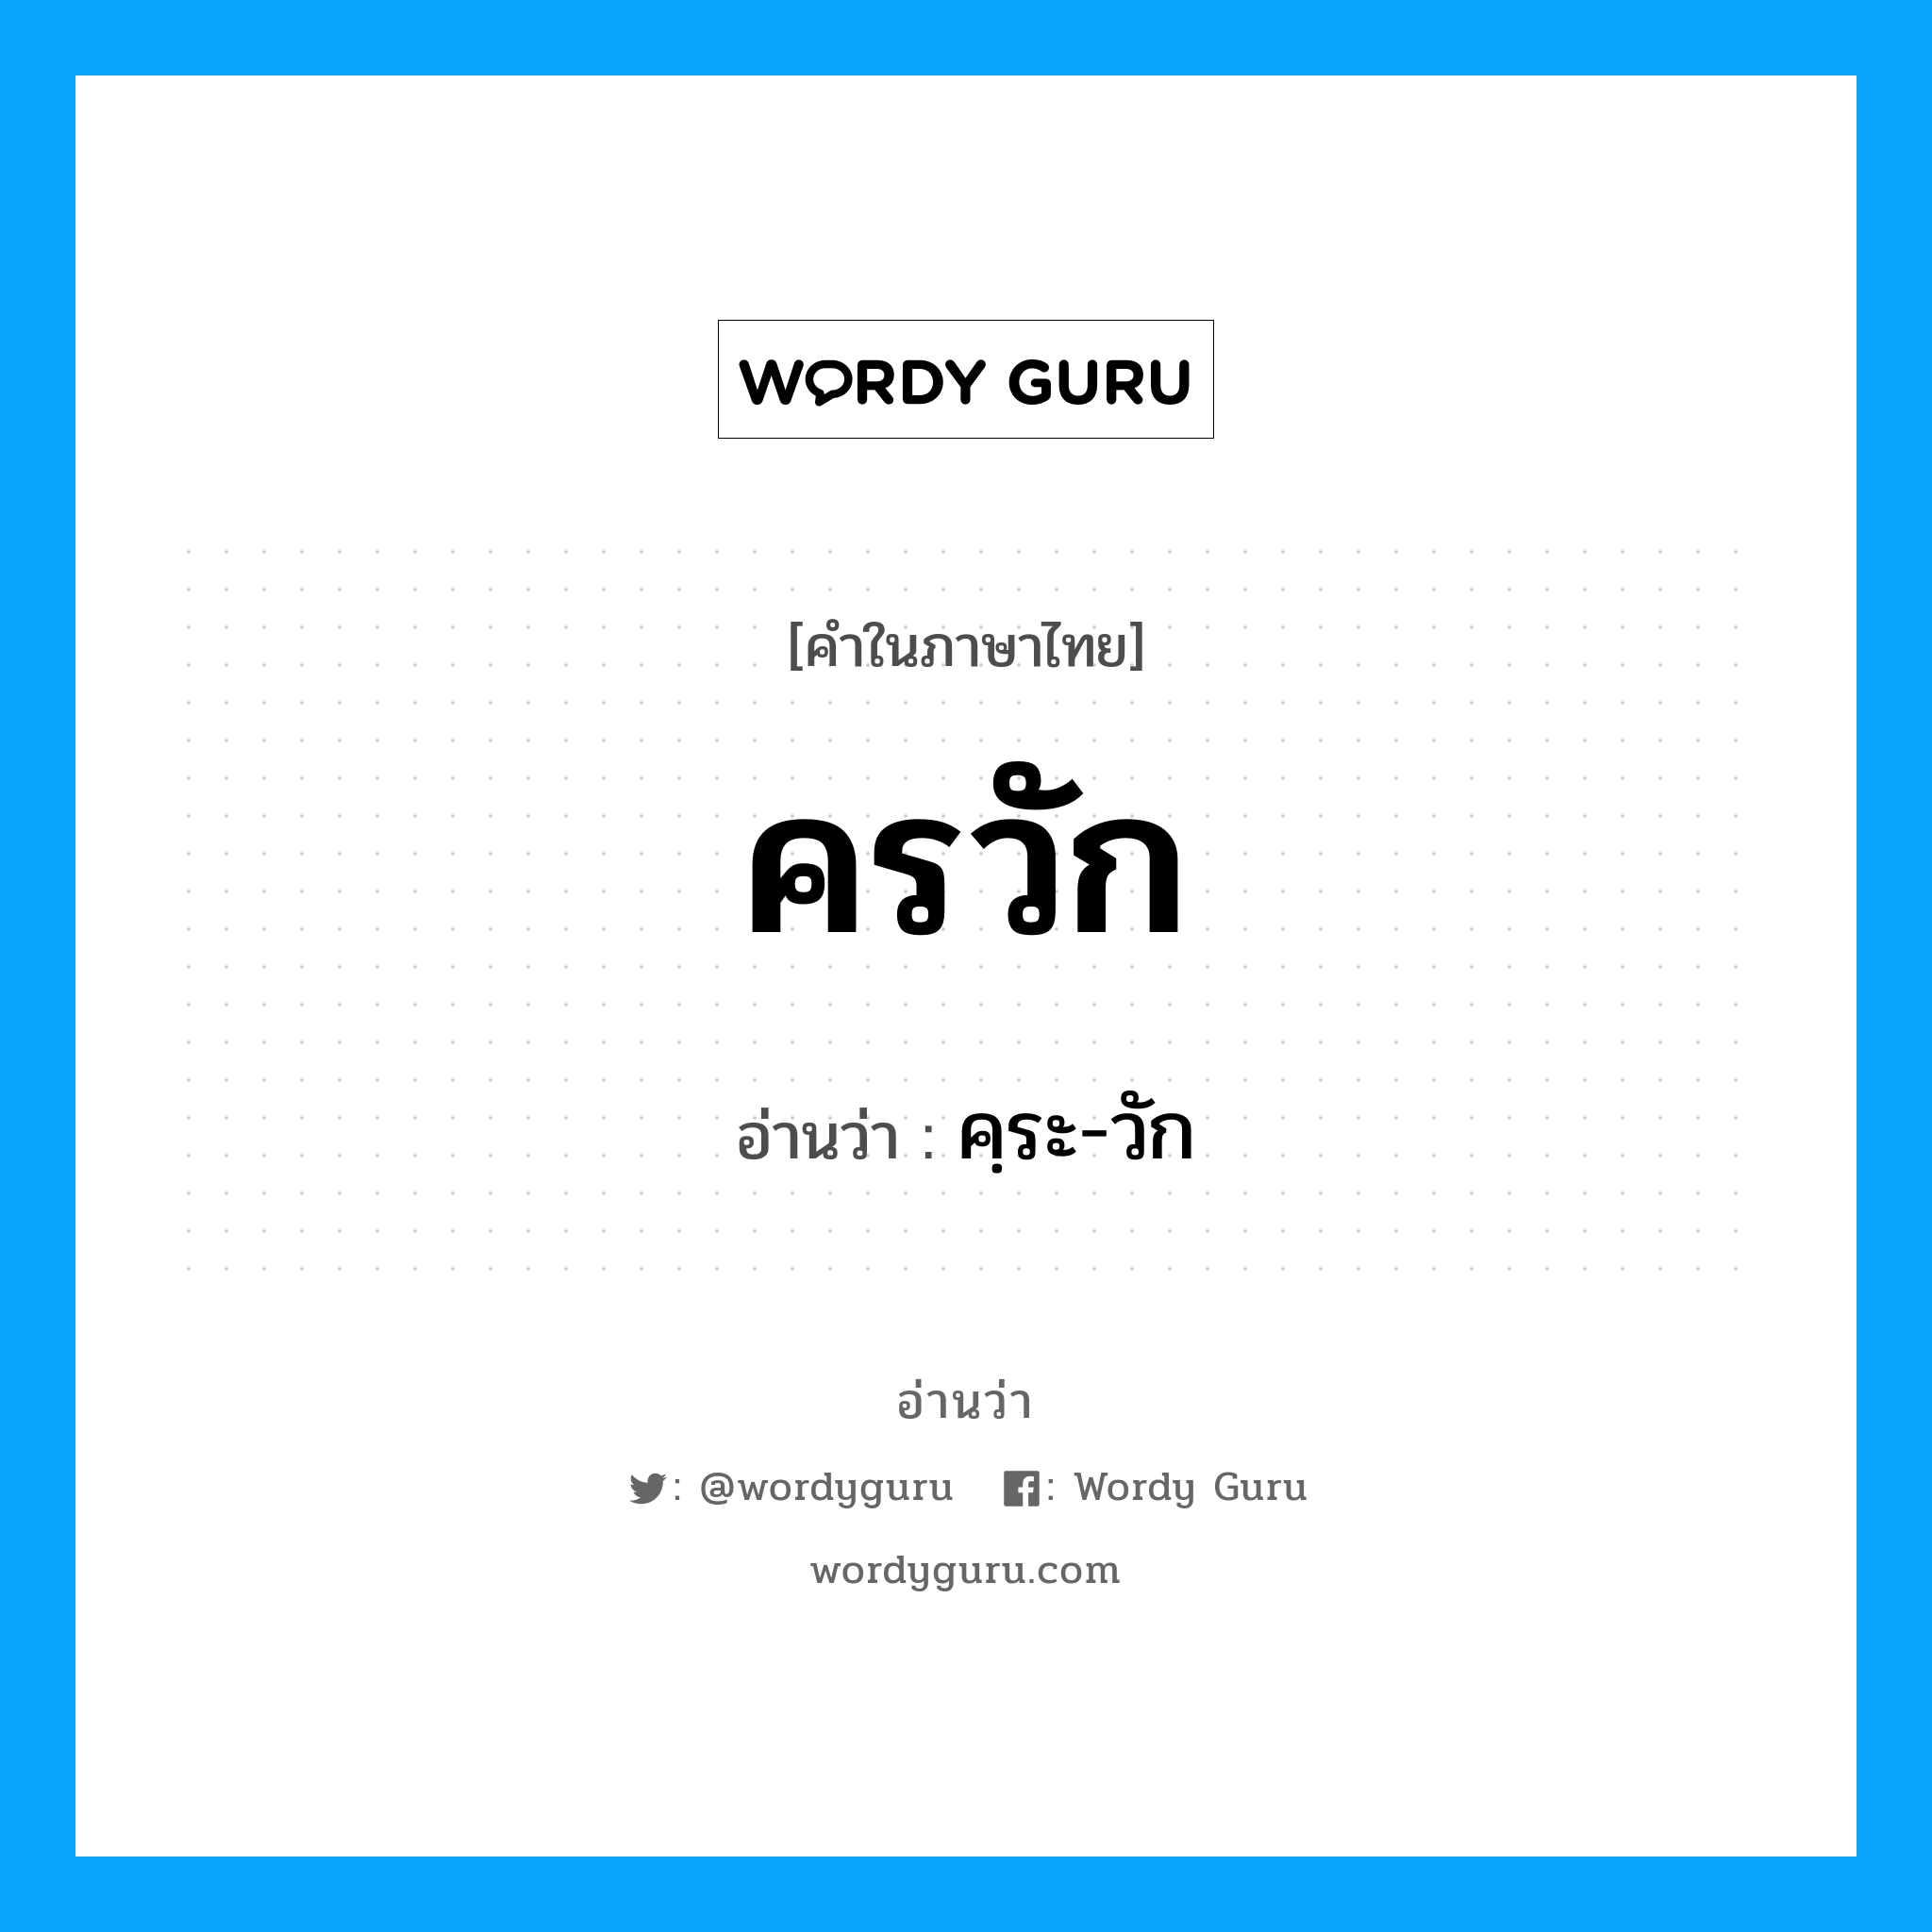 คฺระ-วัก เป็นคำอ่านของคำไหน?, คำในภาษาไทย คฺระ-วัก อ่านว่า ครวัก